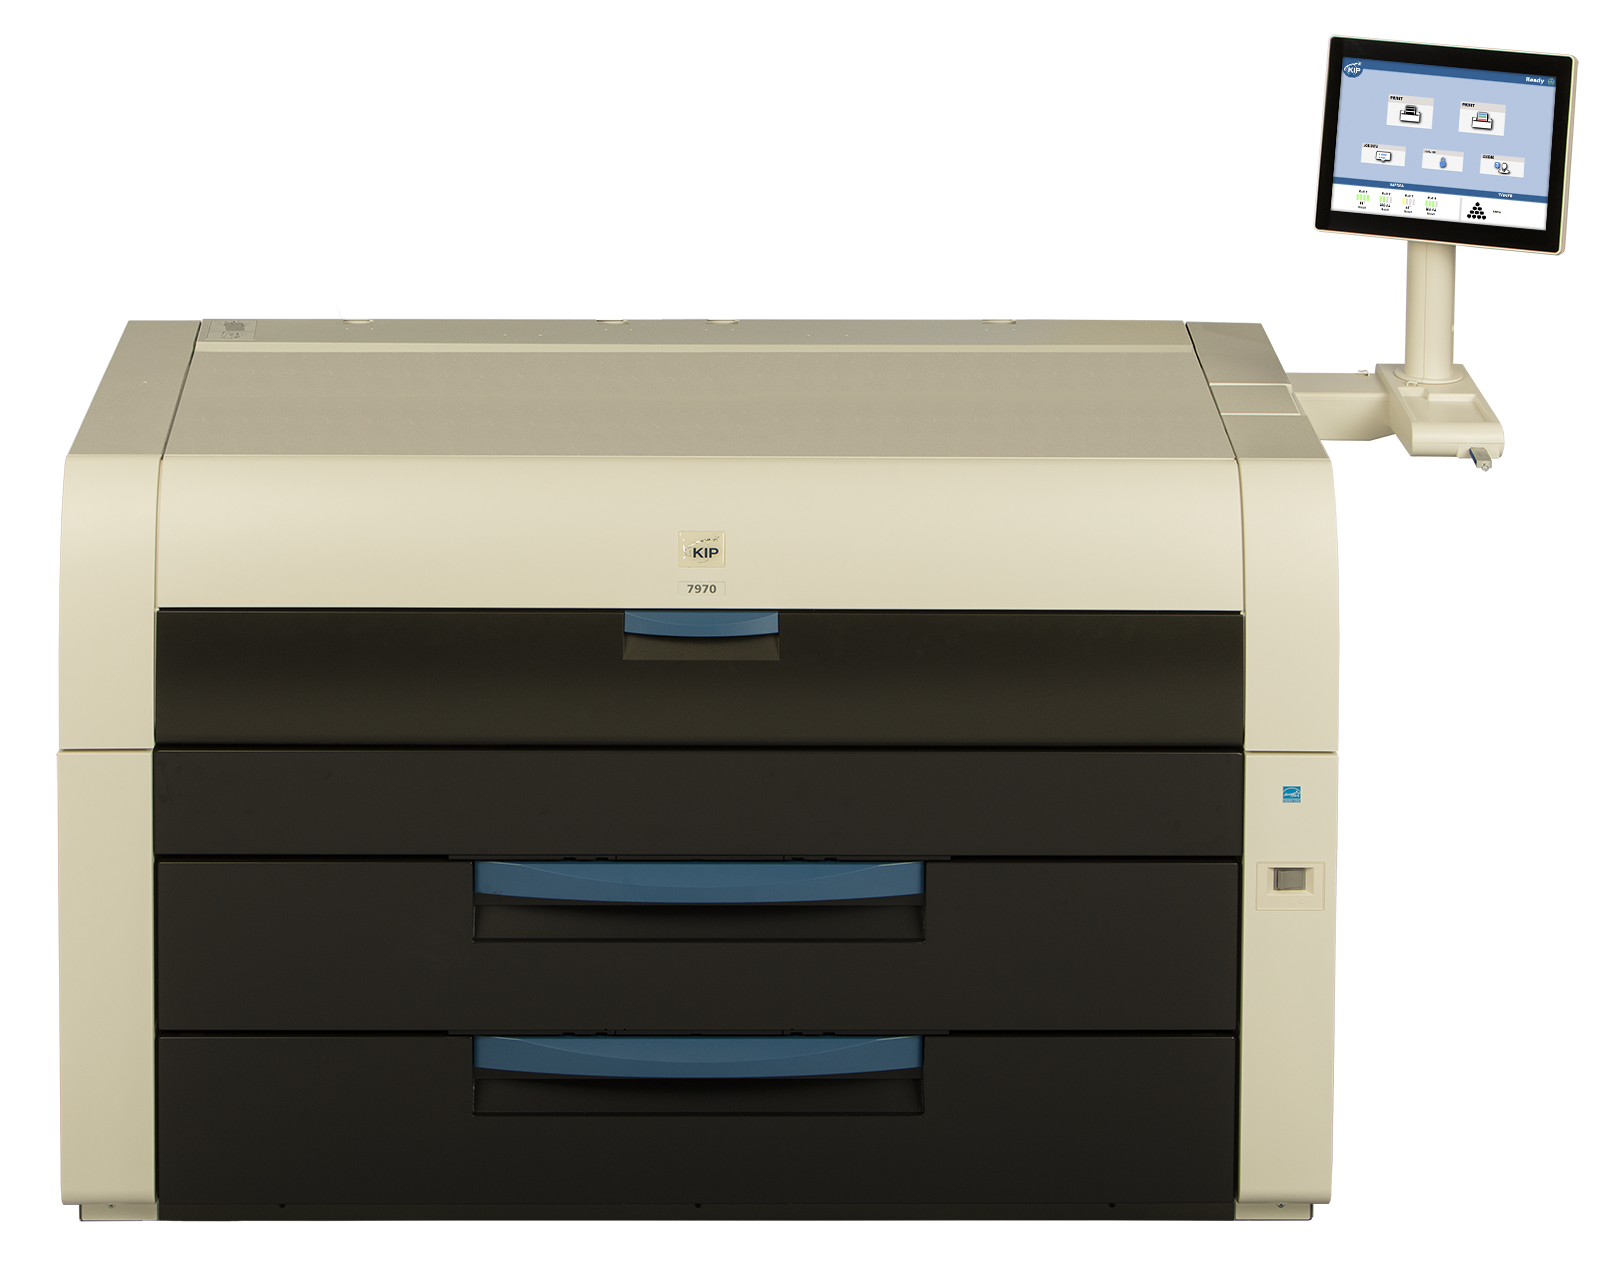 KIP 7970 printer